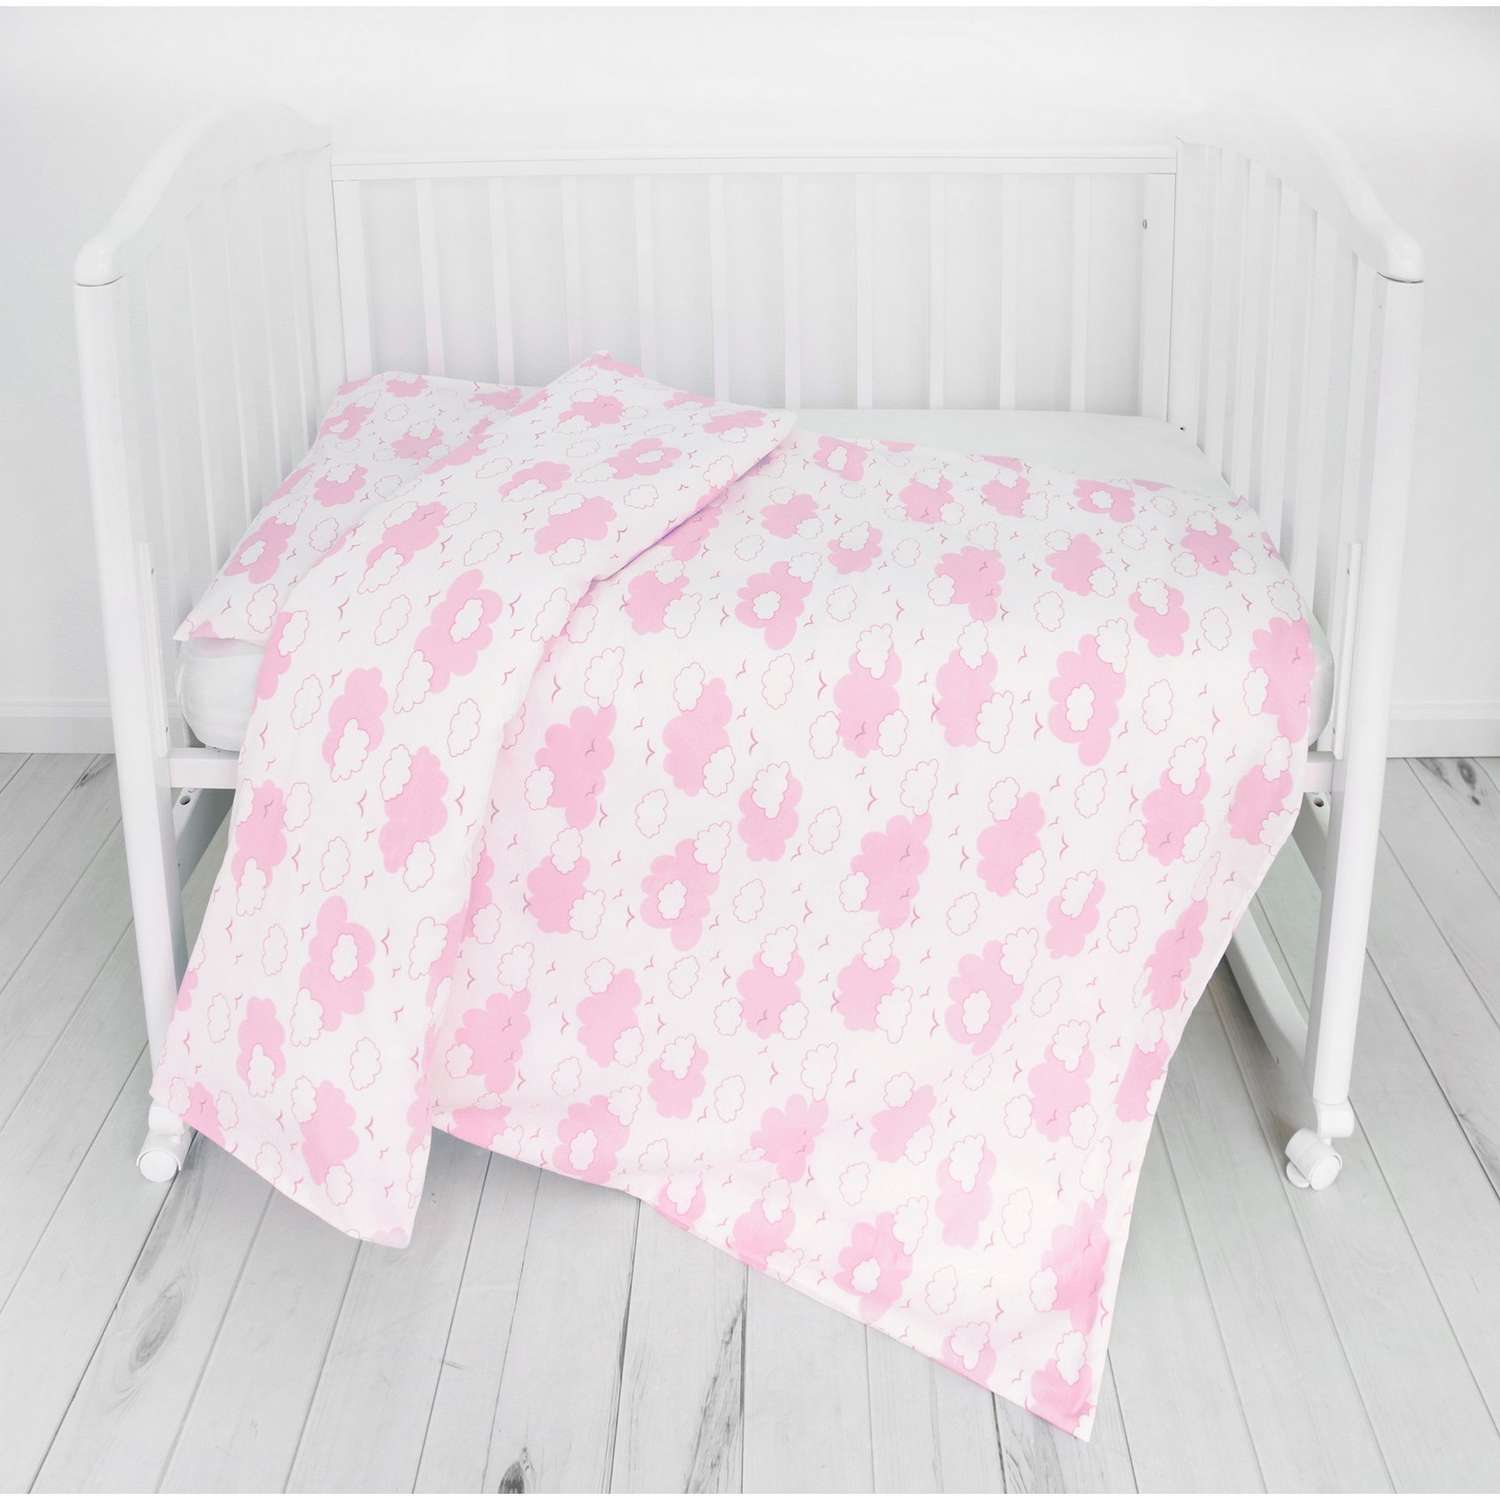 Комплект постельного белья Споки Ноки Облака Розовый 3предмета DMC111/6RO - фото 6